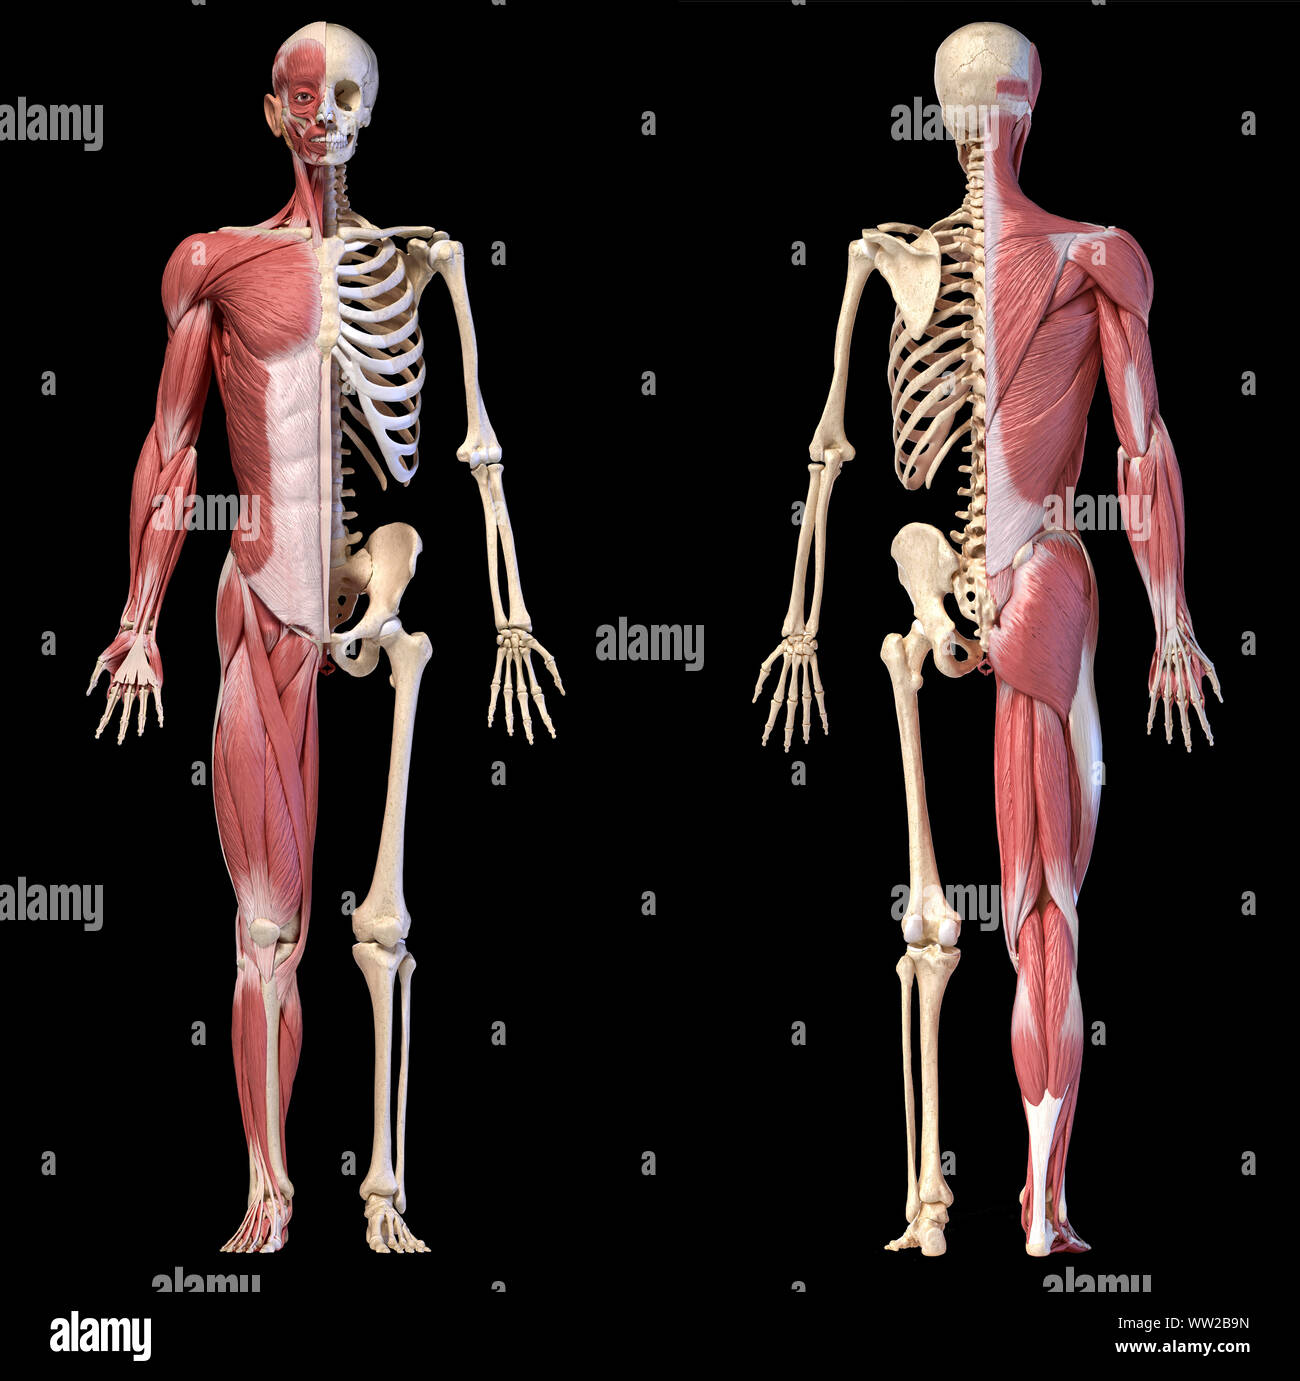 Corps humain, 3d illustration. La figure complète homme systèmes musculaire et squelettique, vues avant et arrière sur fond noir. Banque D'Images